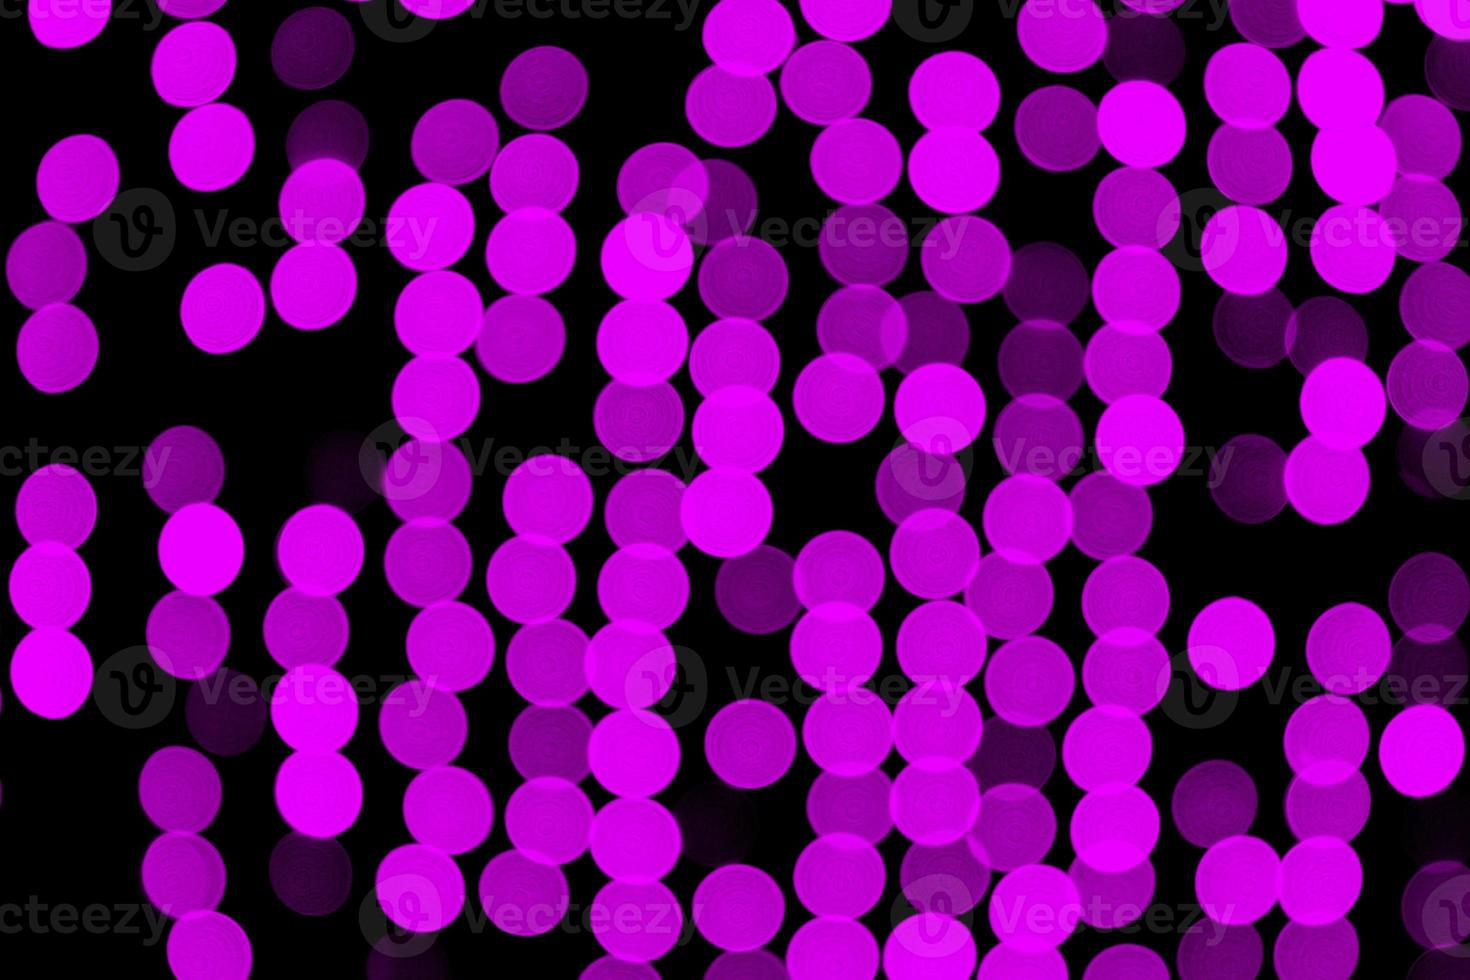 bokeh violet abstrait non focalisé sur fond noir. défocalisé et flou beaucoup de lumière ronde photo